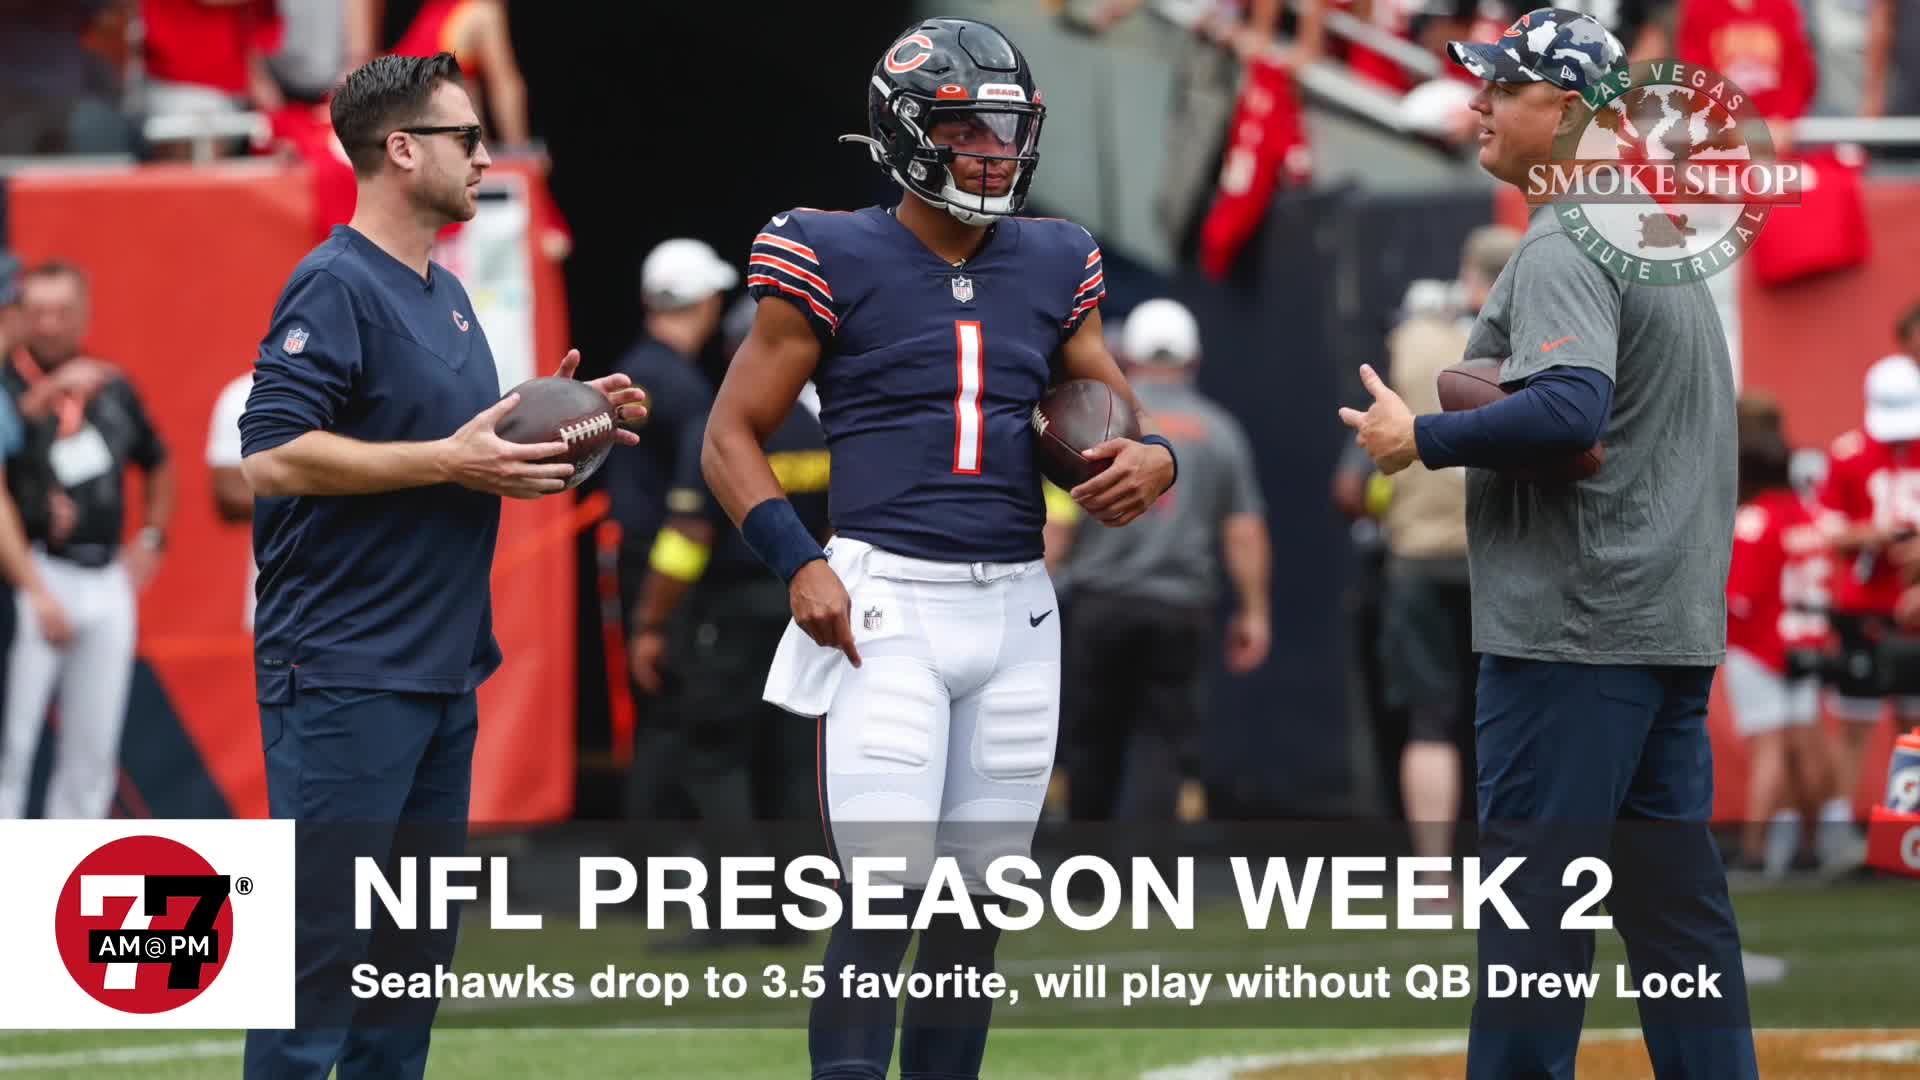 NFL preseason week 2